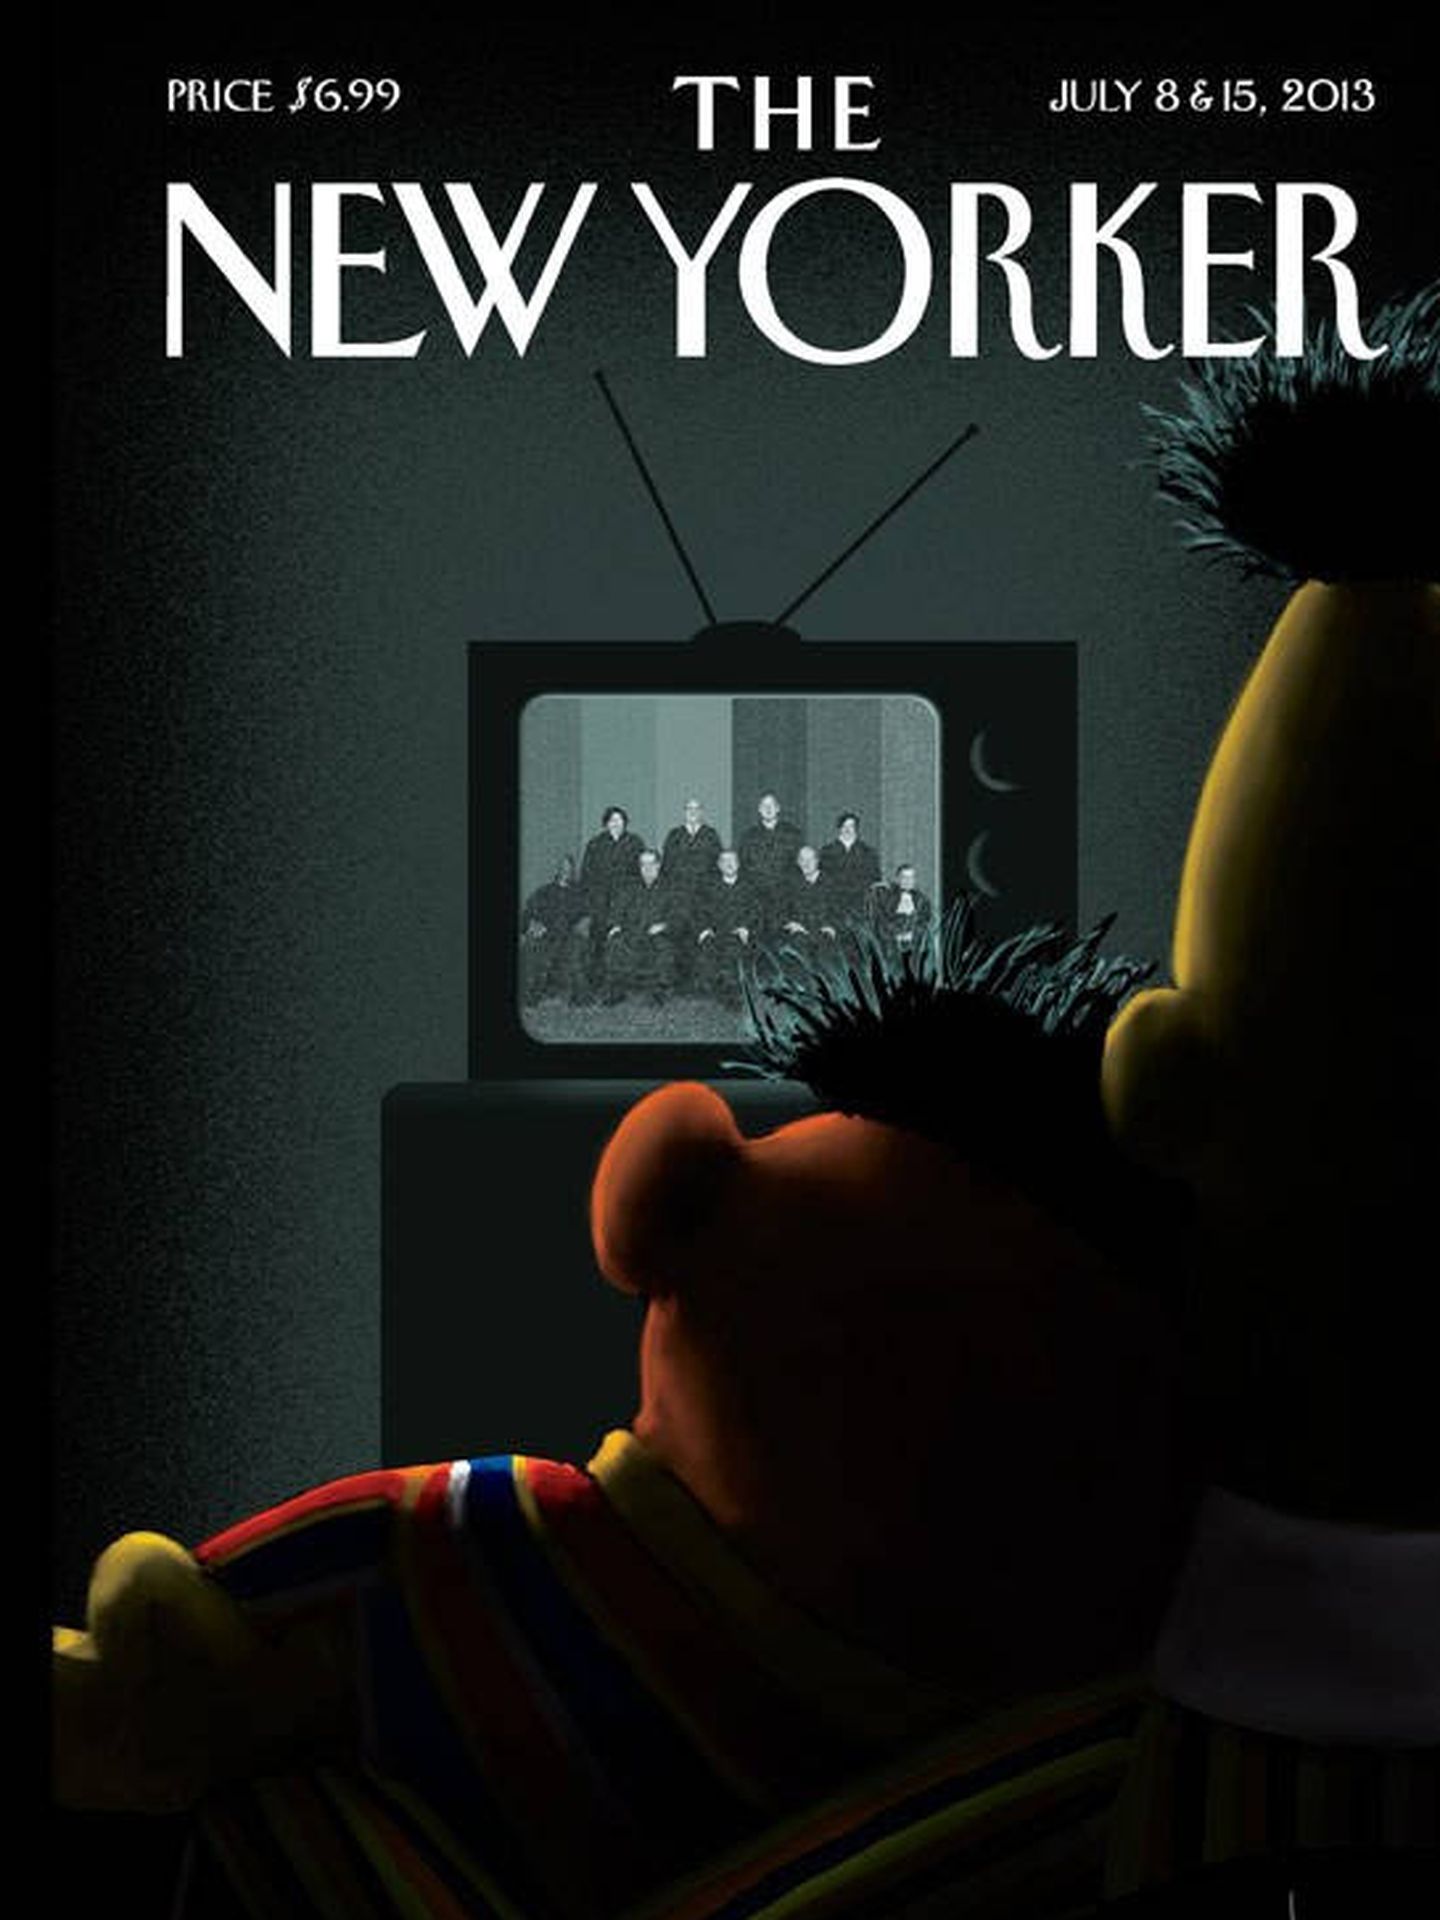 Portada de The New Yorker con Epi y Blas.